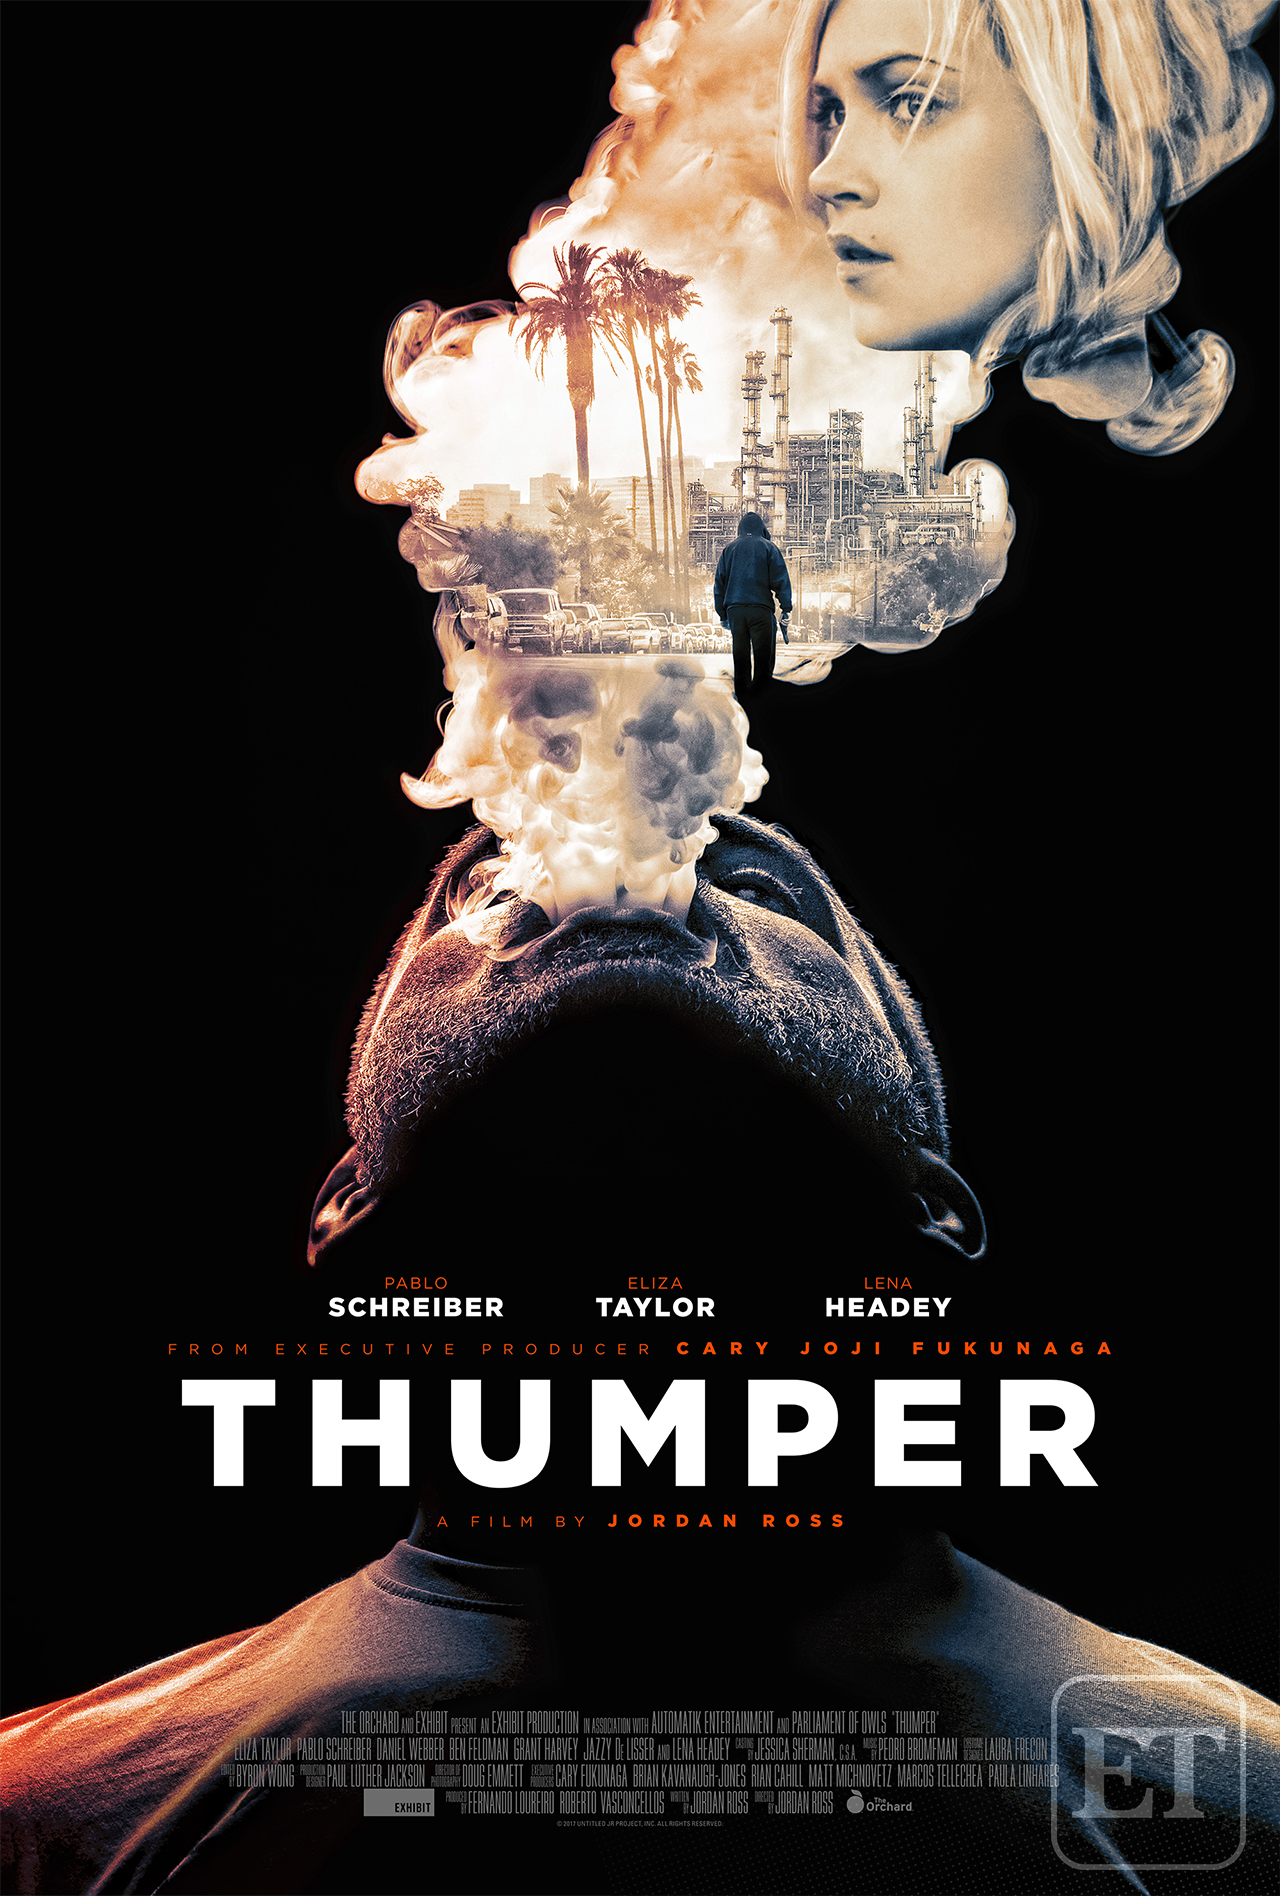 Thumper online